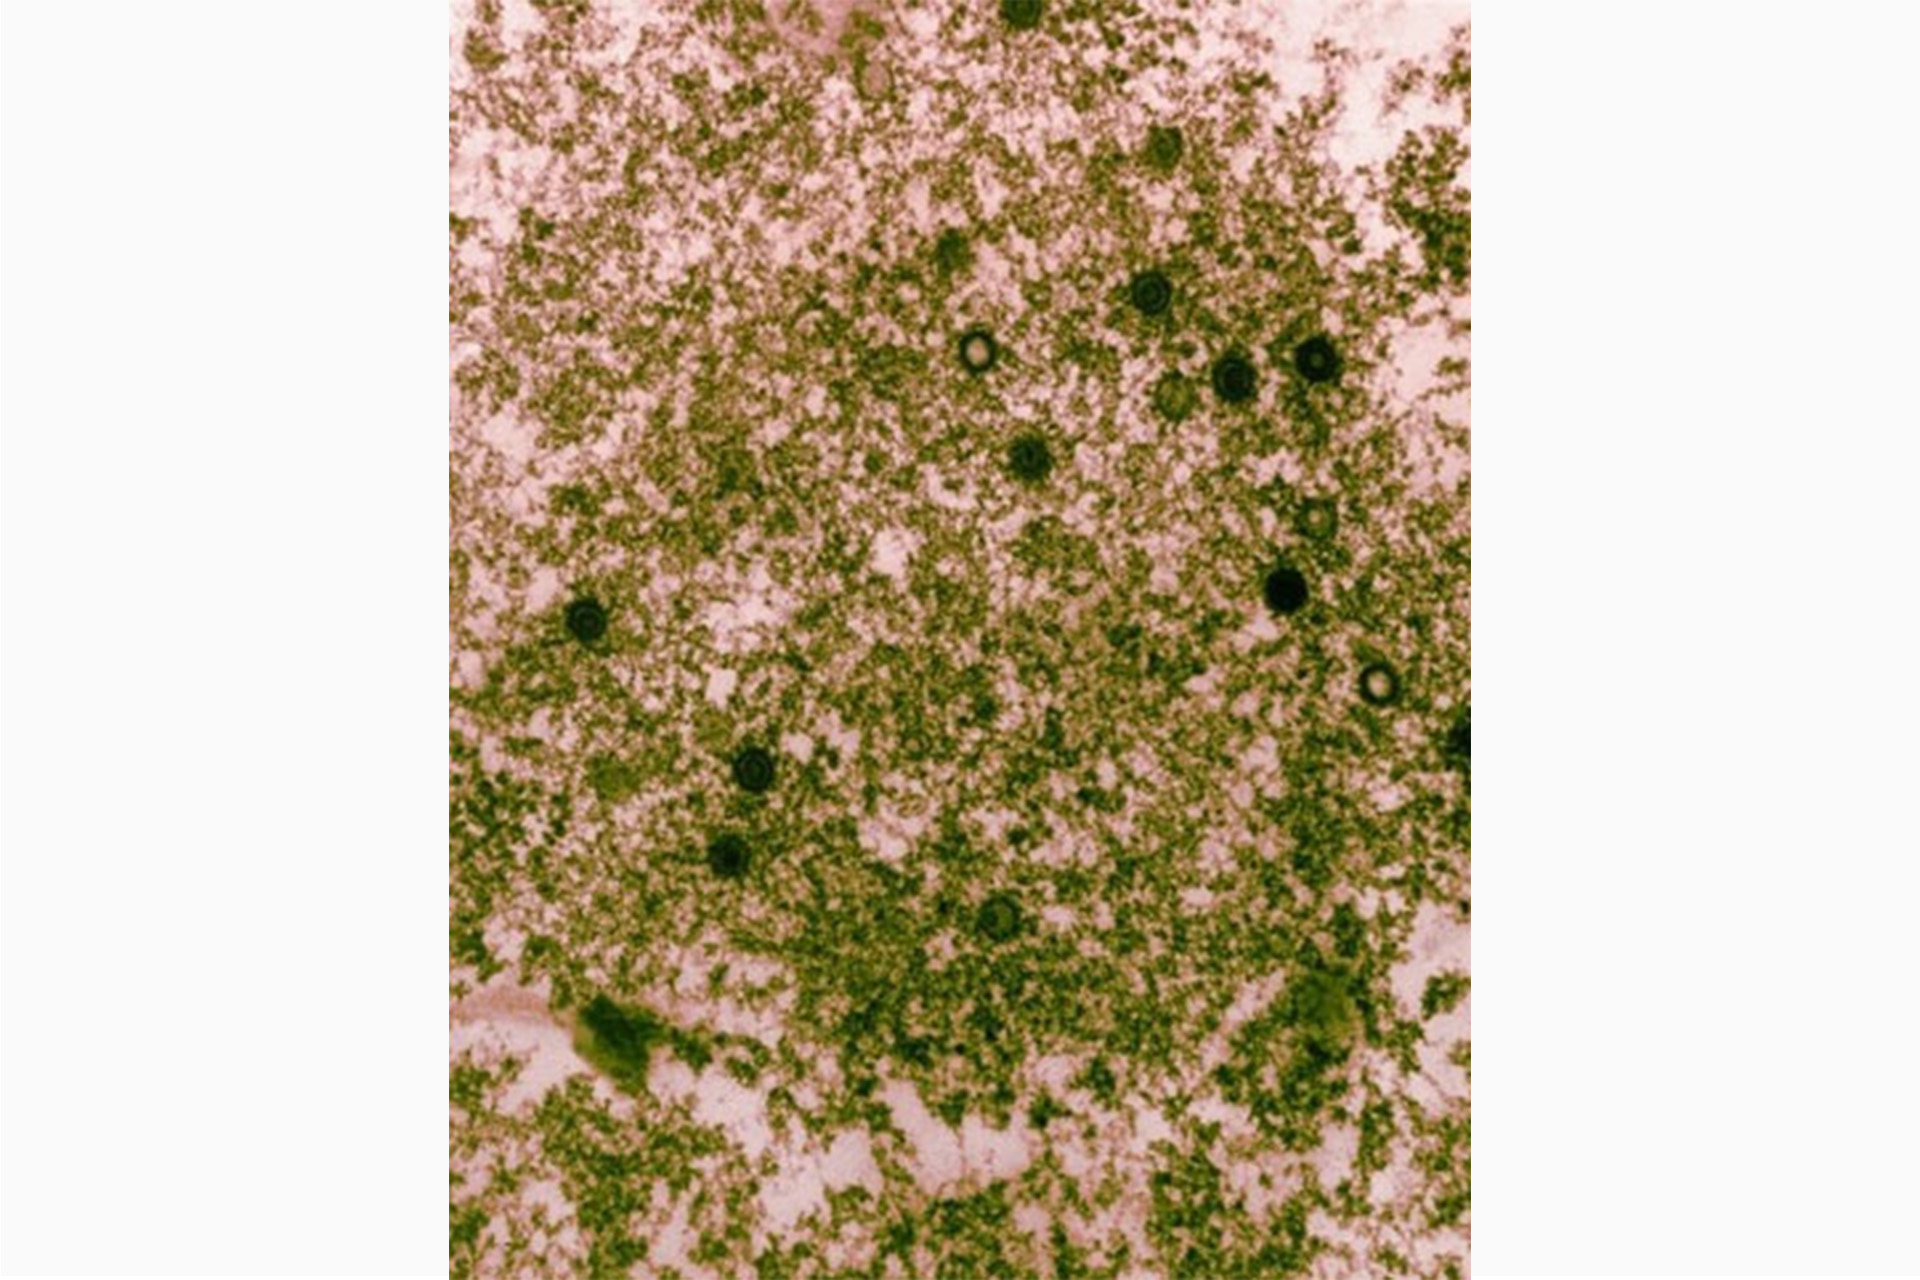 Электронная микрофотография вирусов герпеса человека, таких как вирус Эпштейна-Барр